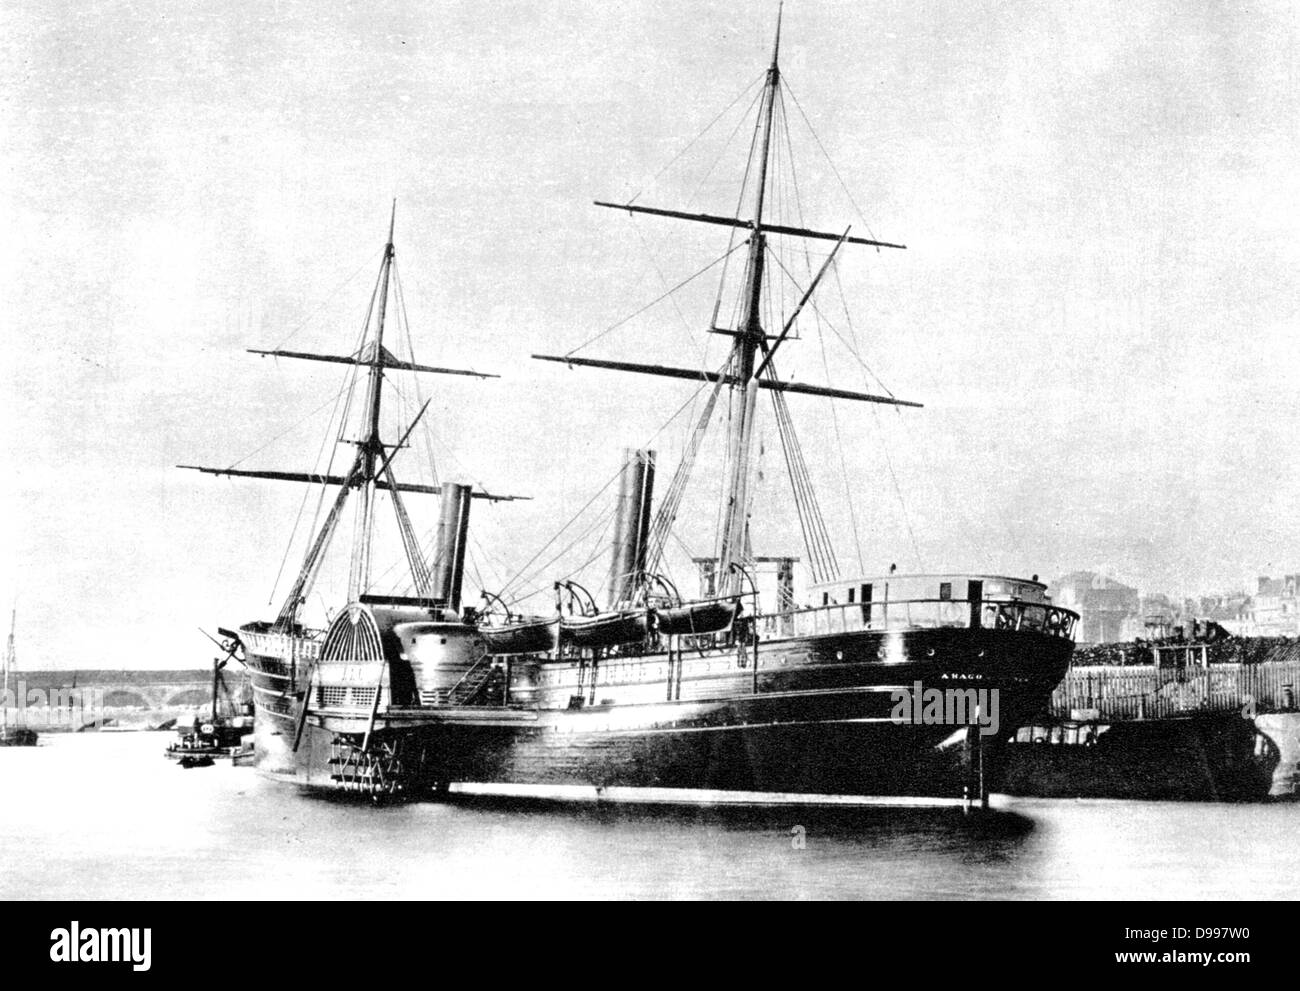 New York & di Le Havre, la società di navigazione a vapore il battello a vapore "Arago', 1855 nel porto di Le Havre, Francia. Trasporto, Marine, Transatlantic Foto Stock